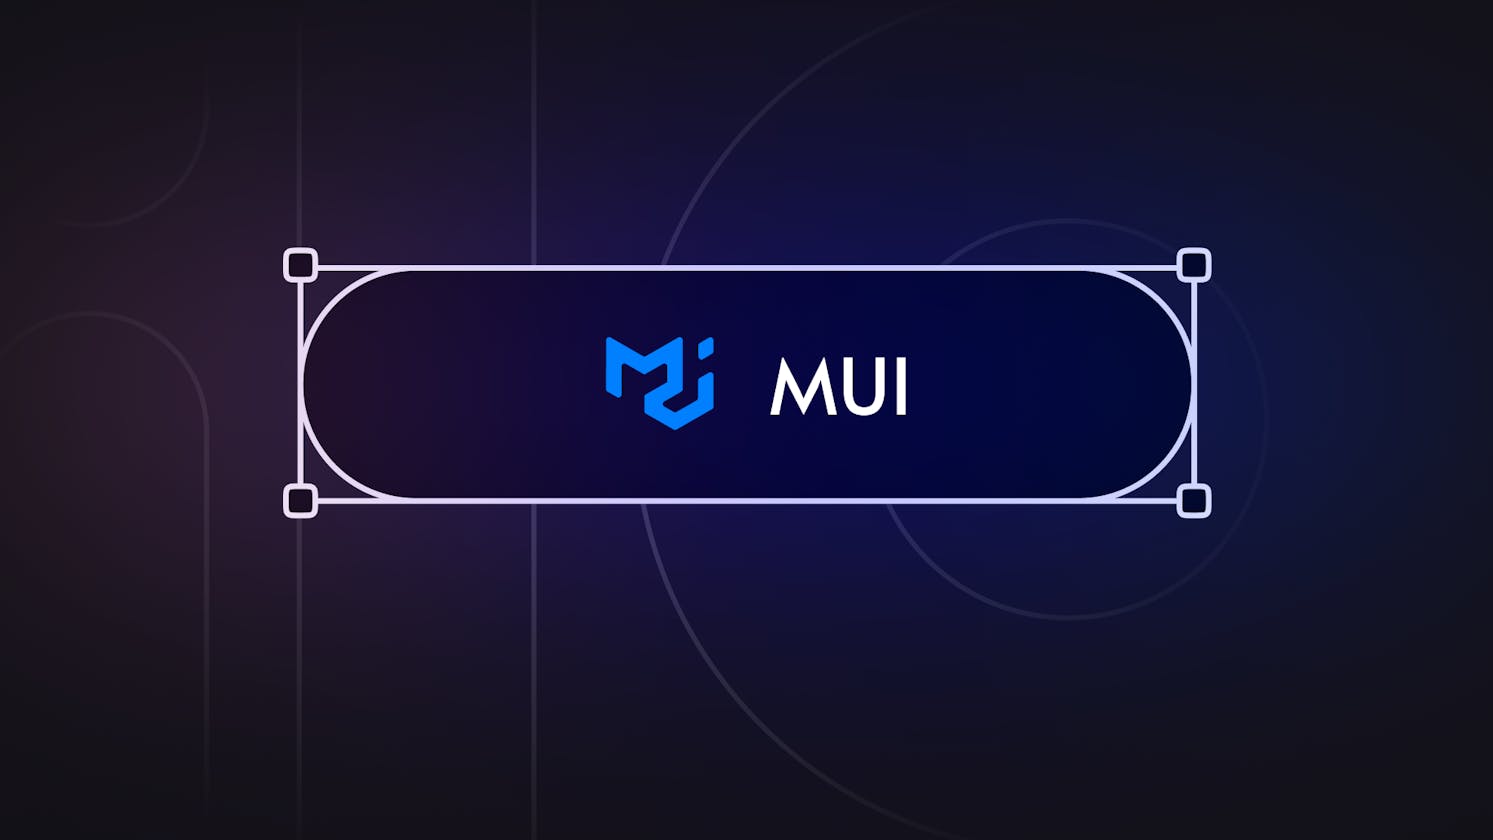 2024 has arrived, should I choose MUI?